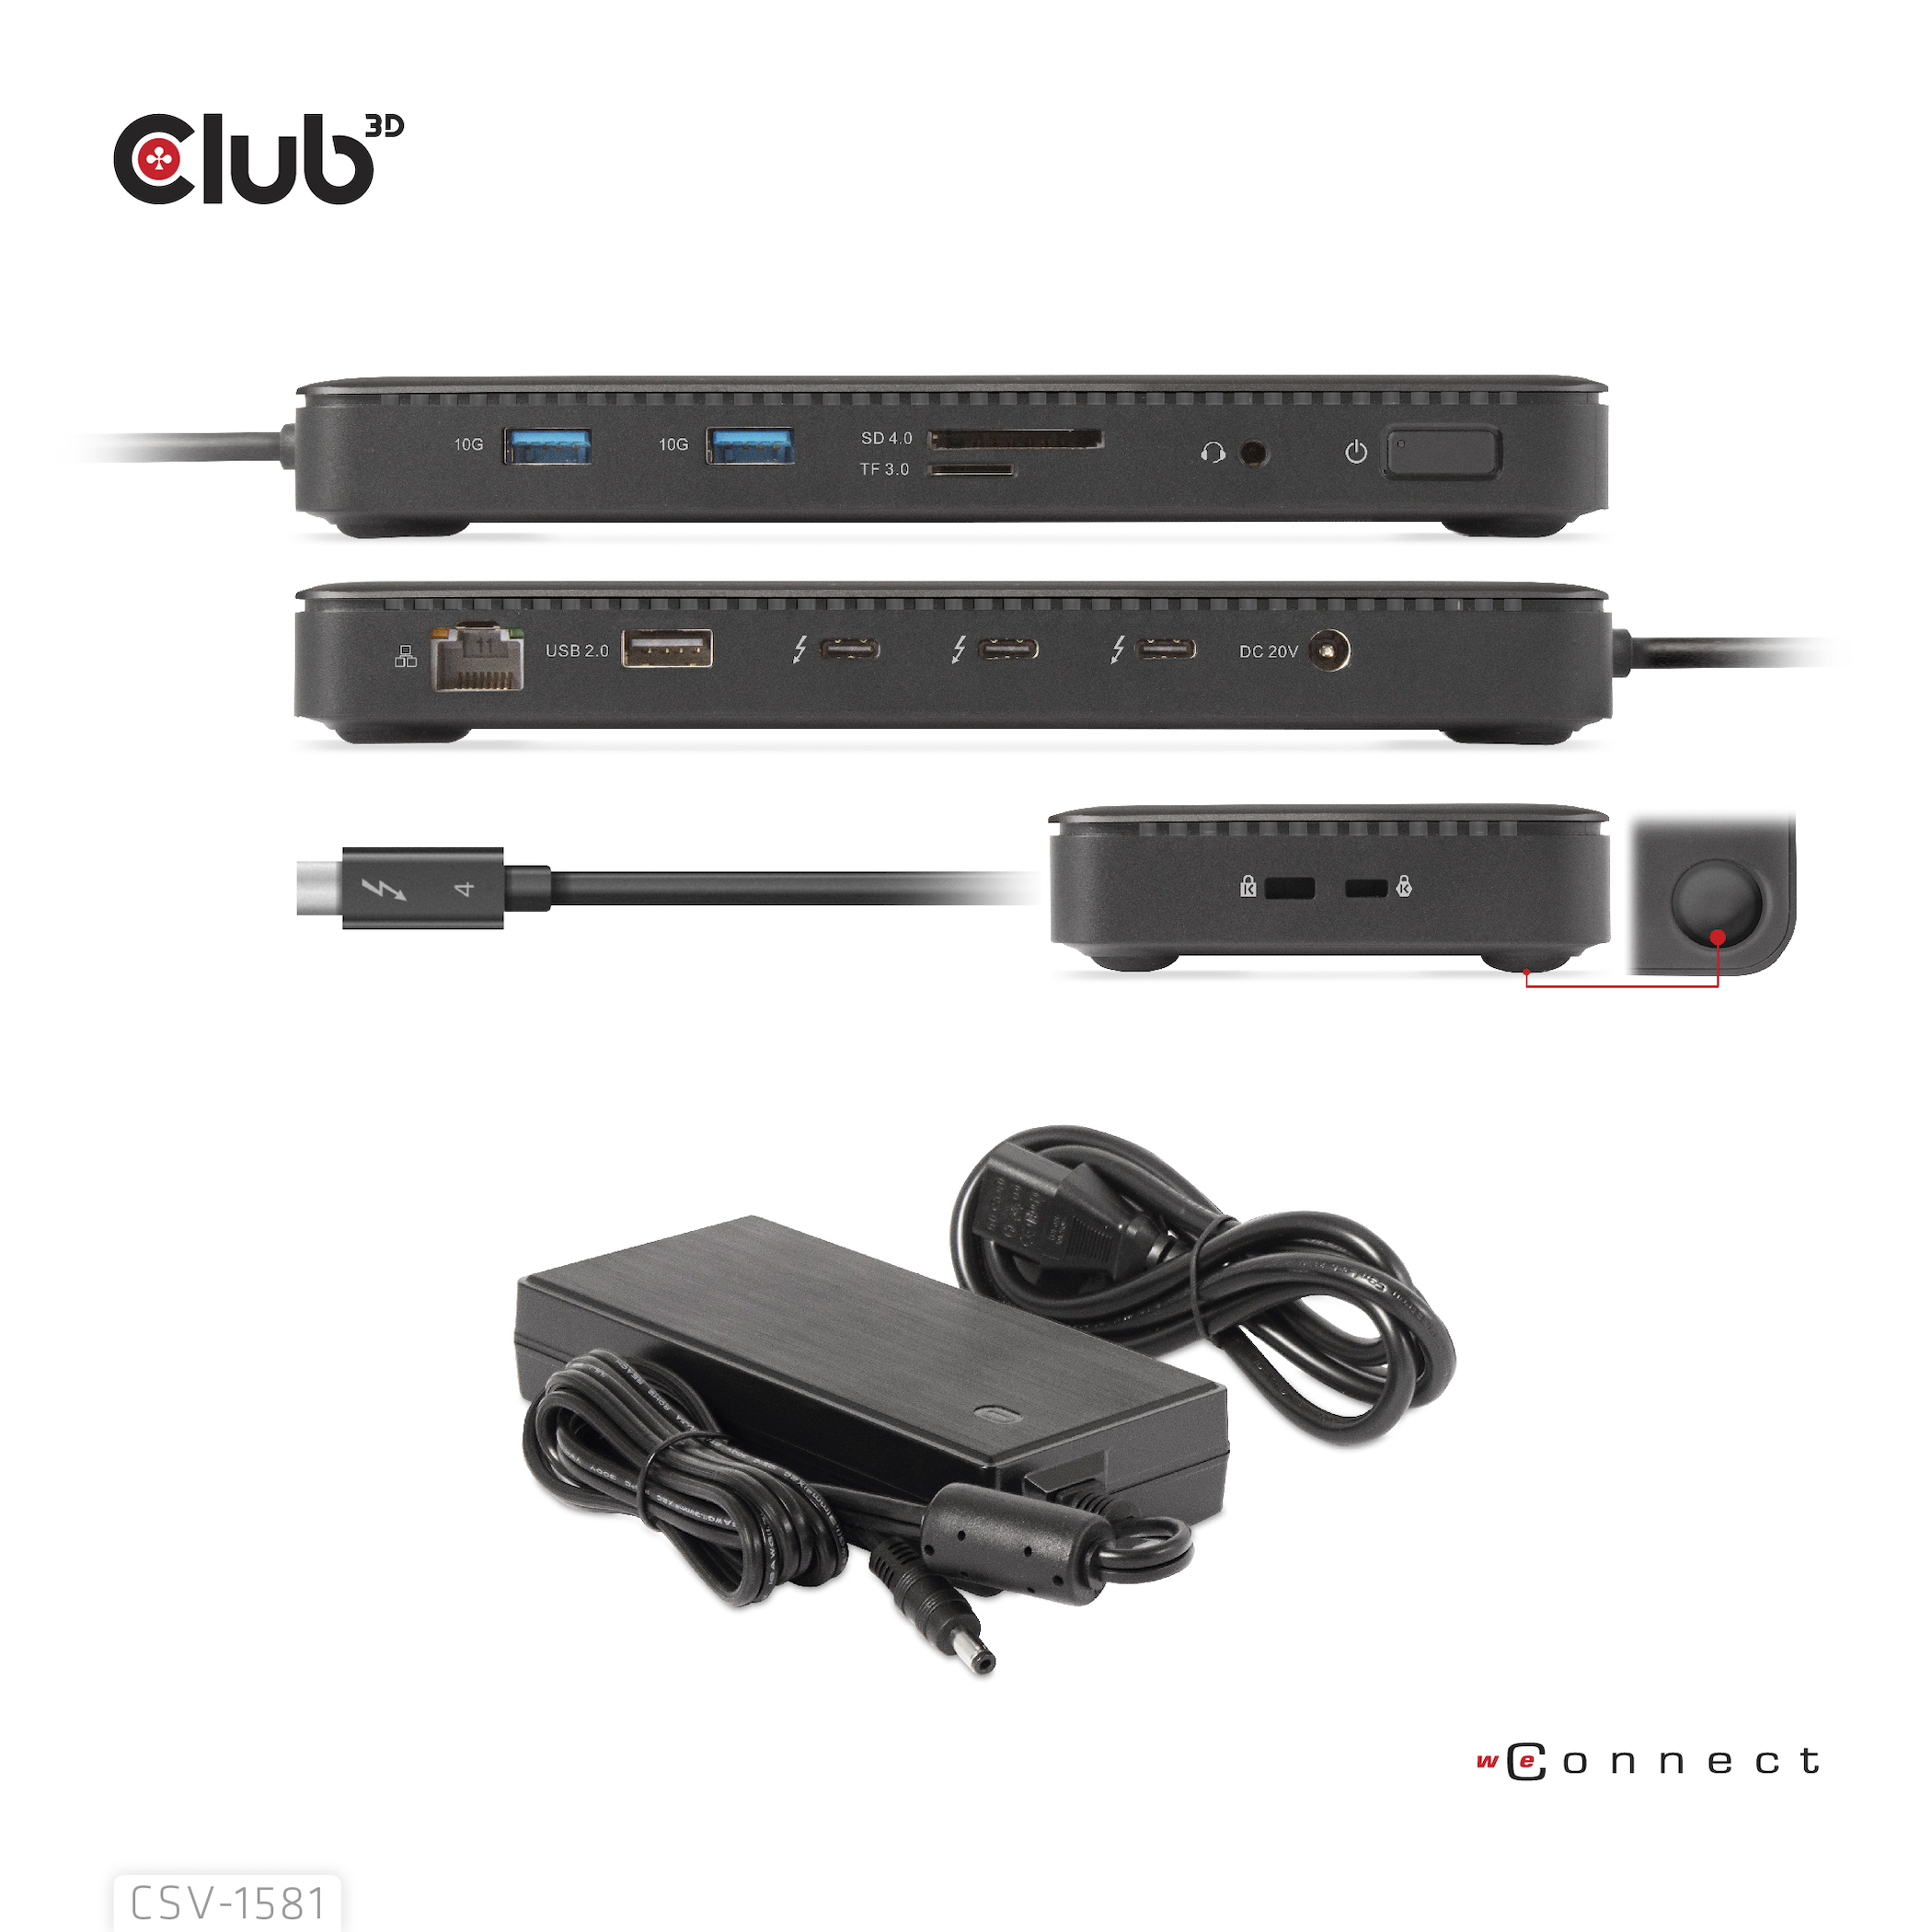 Club 3D Dockingstation - USB-C / Thunderbolt 3 / Thunderbolt 4